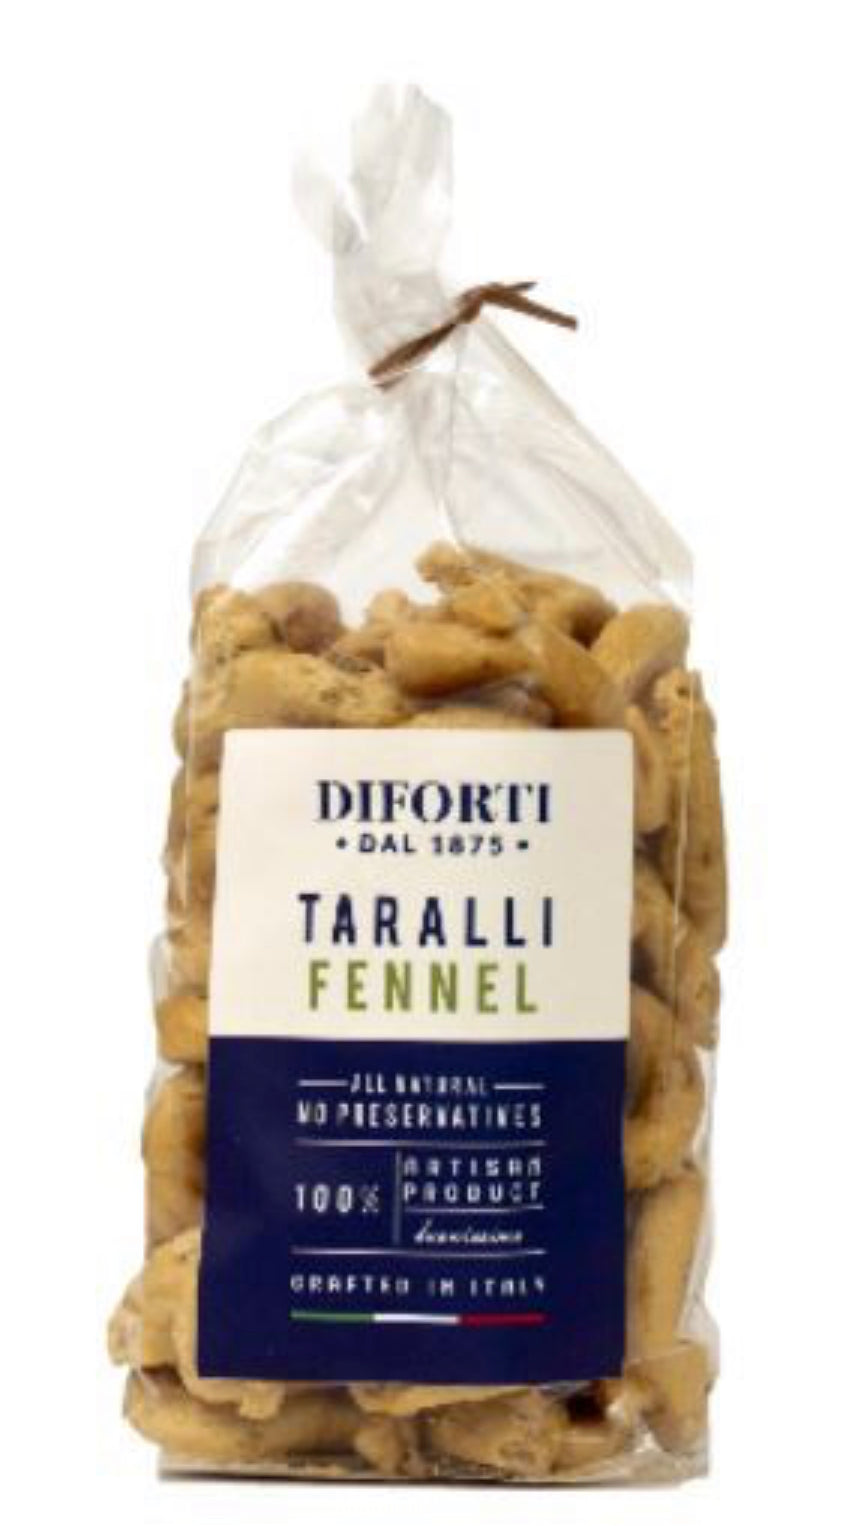 Diforti - Fennel Taralli 200g